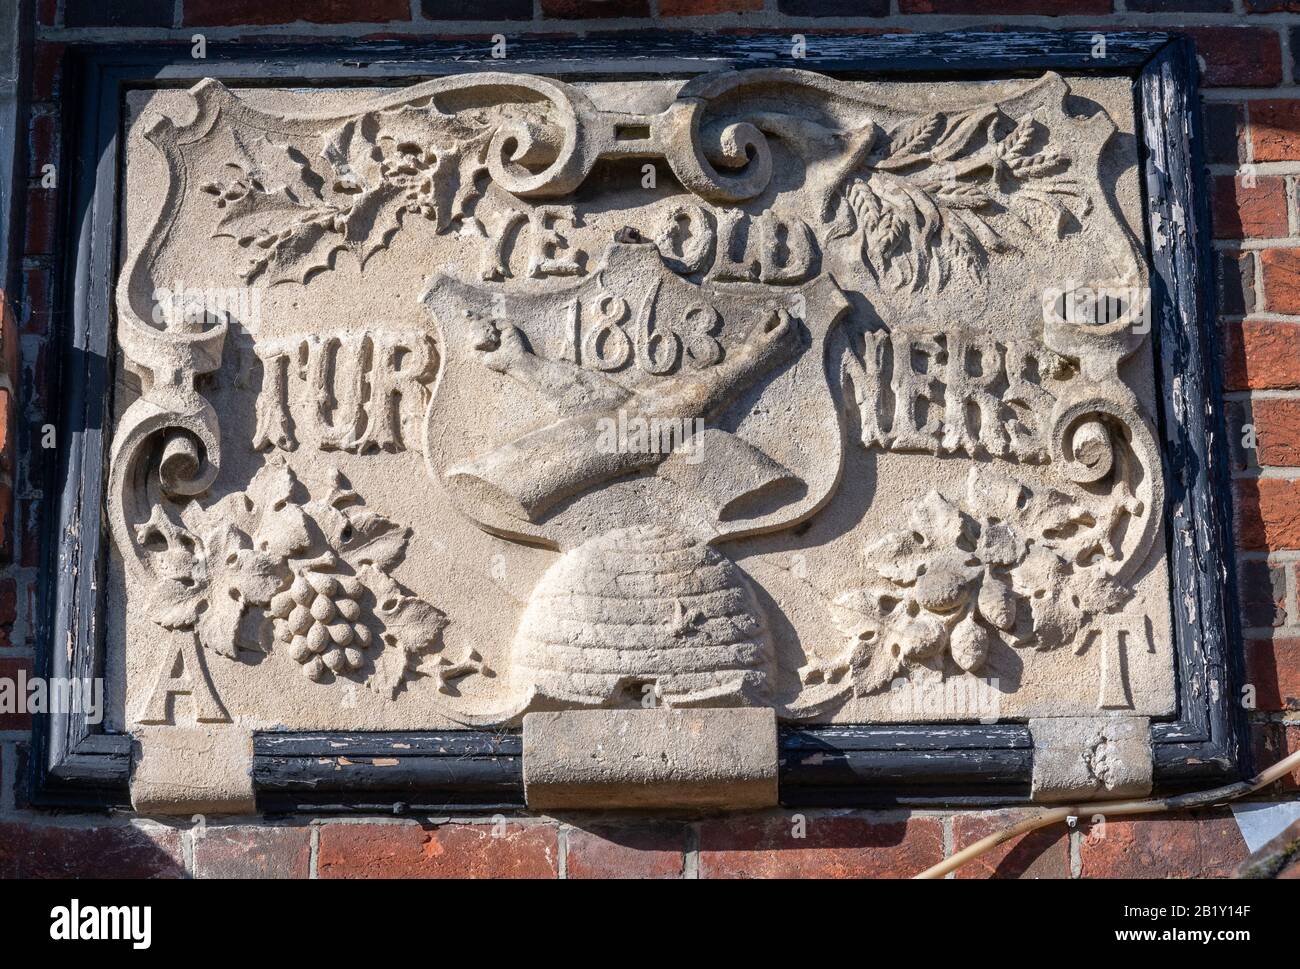 Plaque sculptée en pierre datant de 1863 à la maison publique Ye Old Turner Arms, West End Road, Mortimer, Berkshire, Angleterre. Banque D'Images